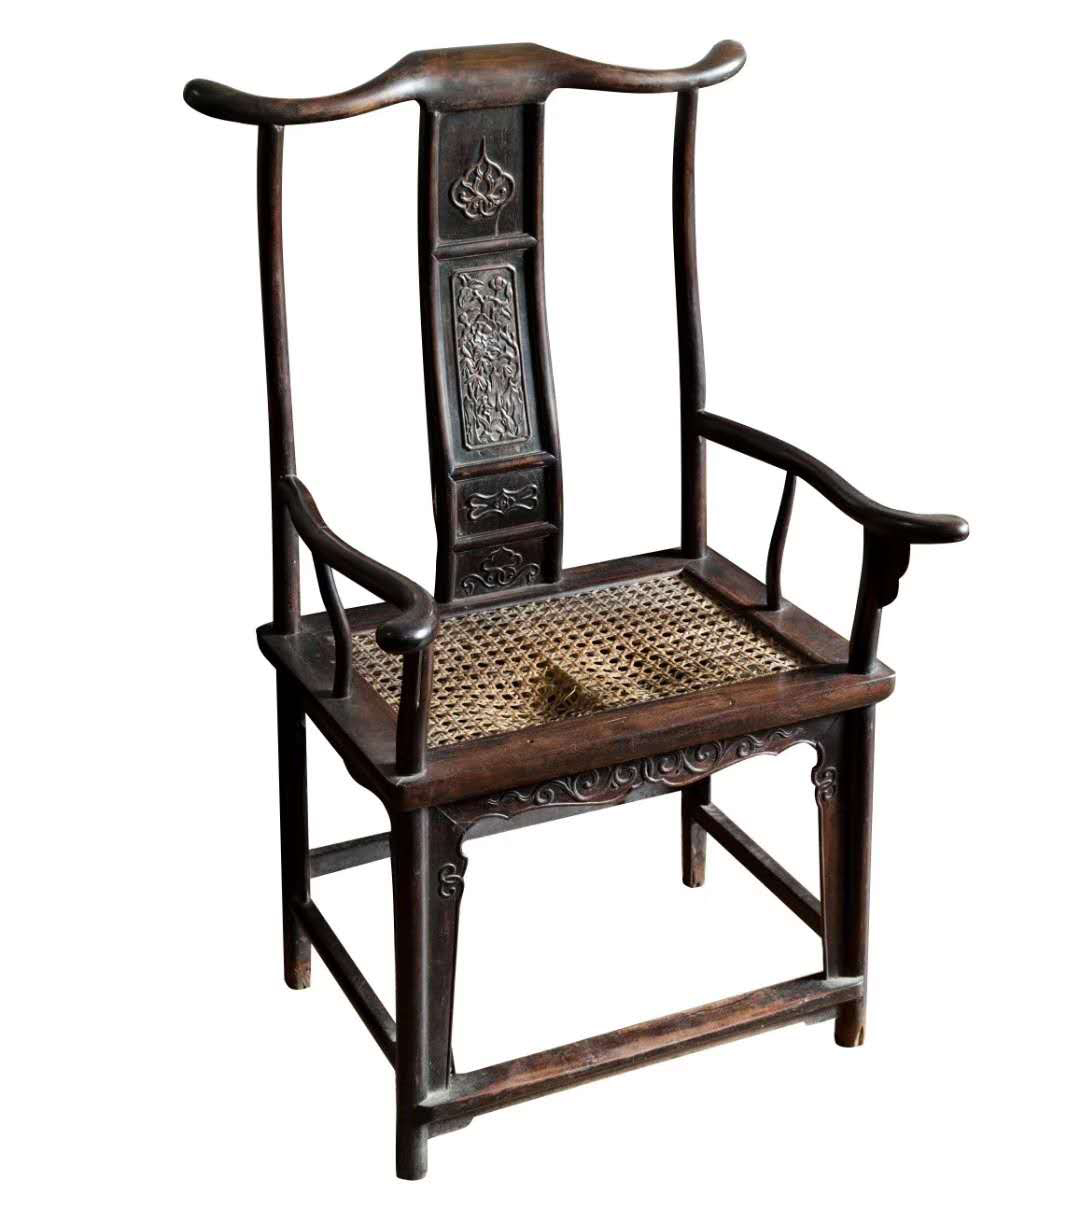 古代椅子有什么讲究?中国古代家具文化之